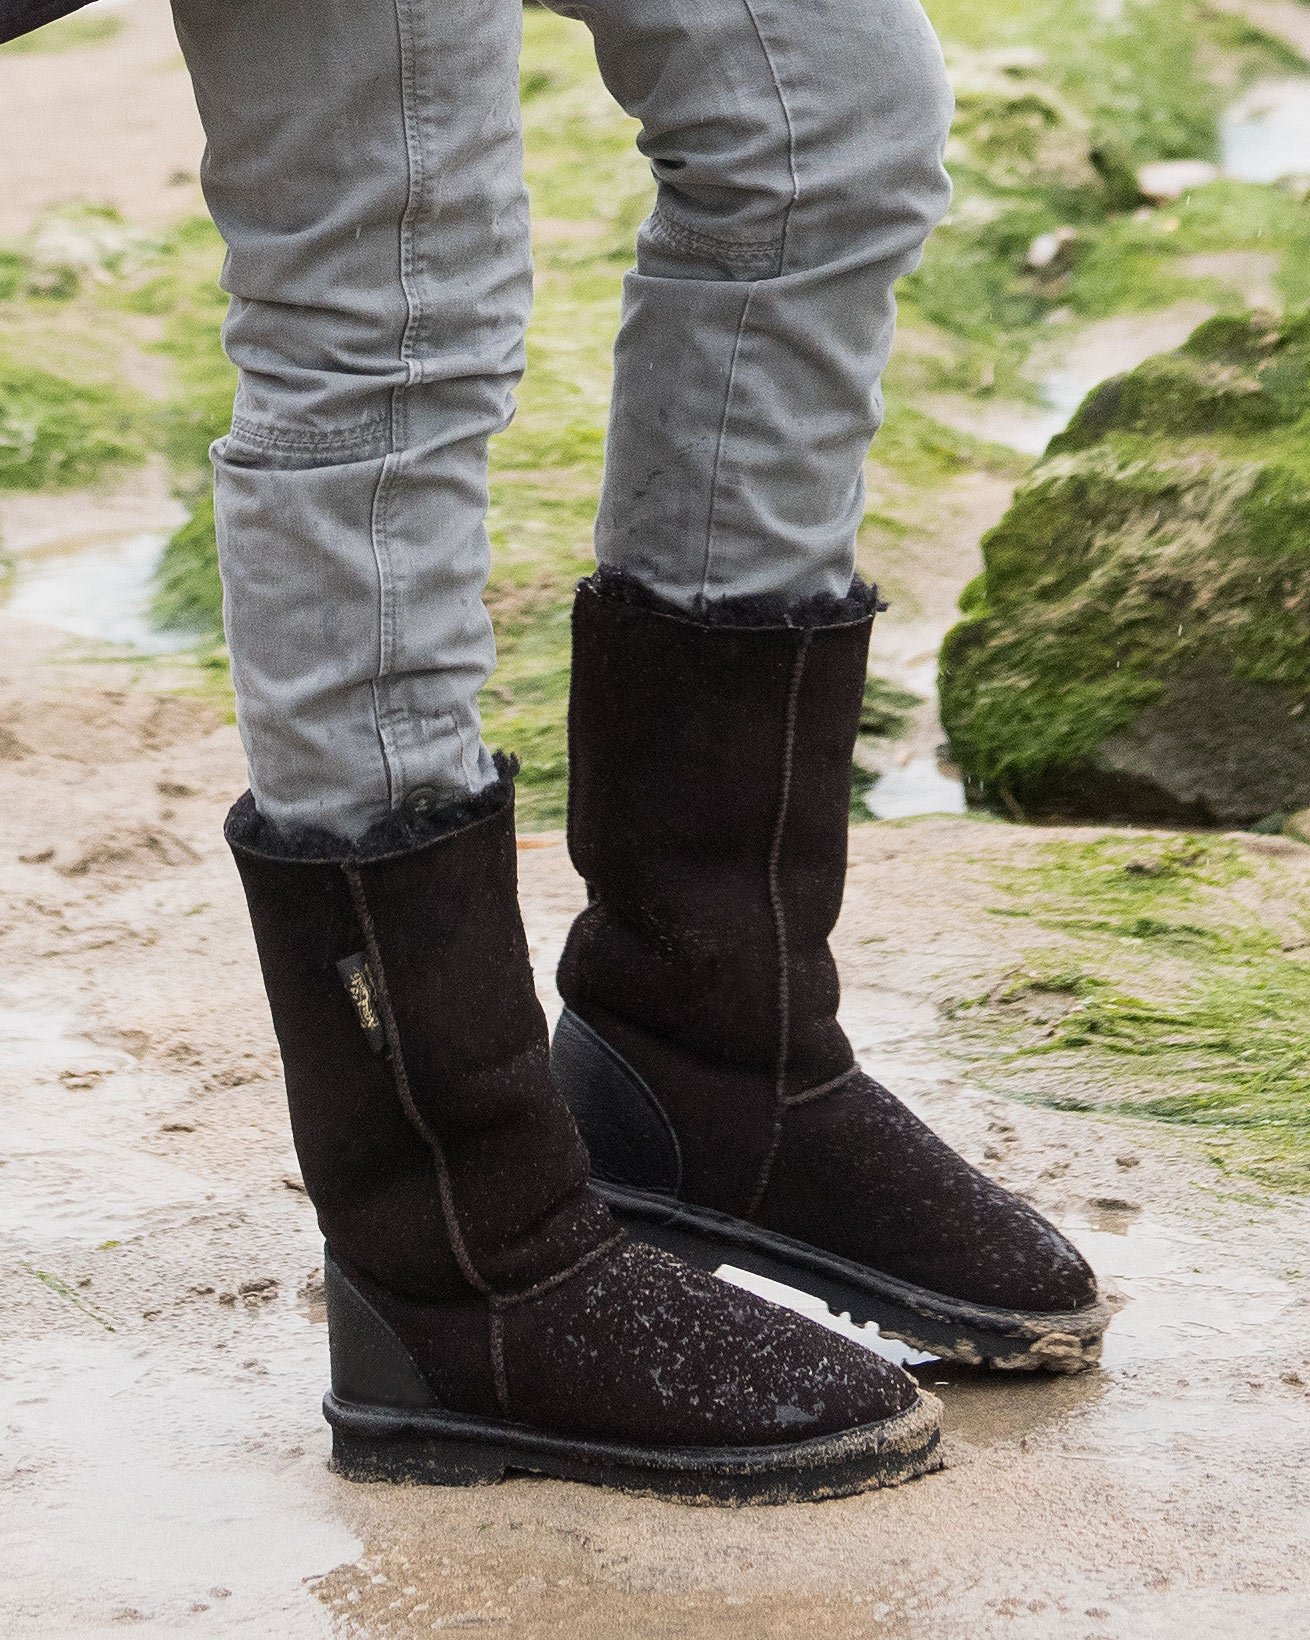 Aqualamb Boots Calf